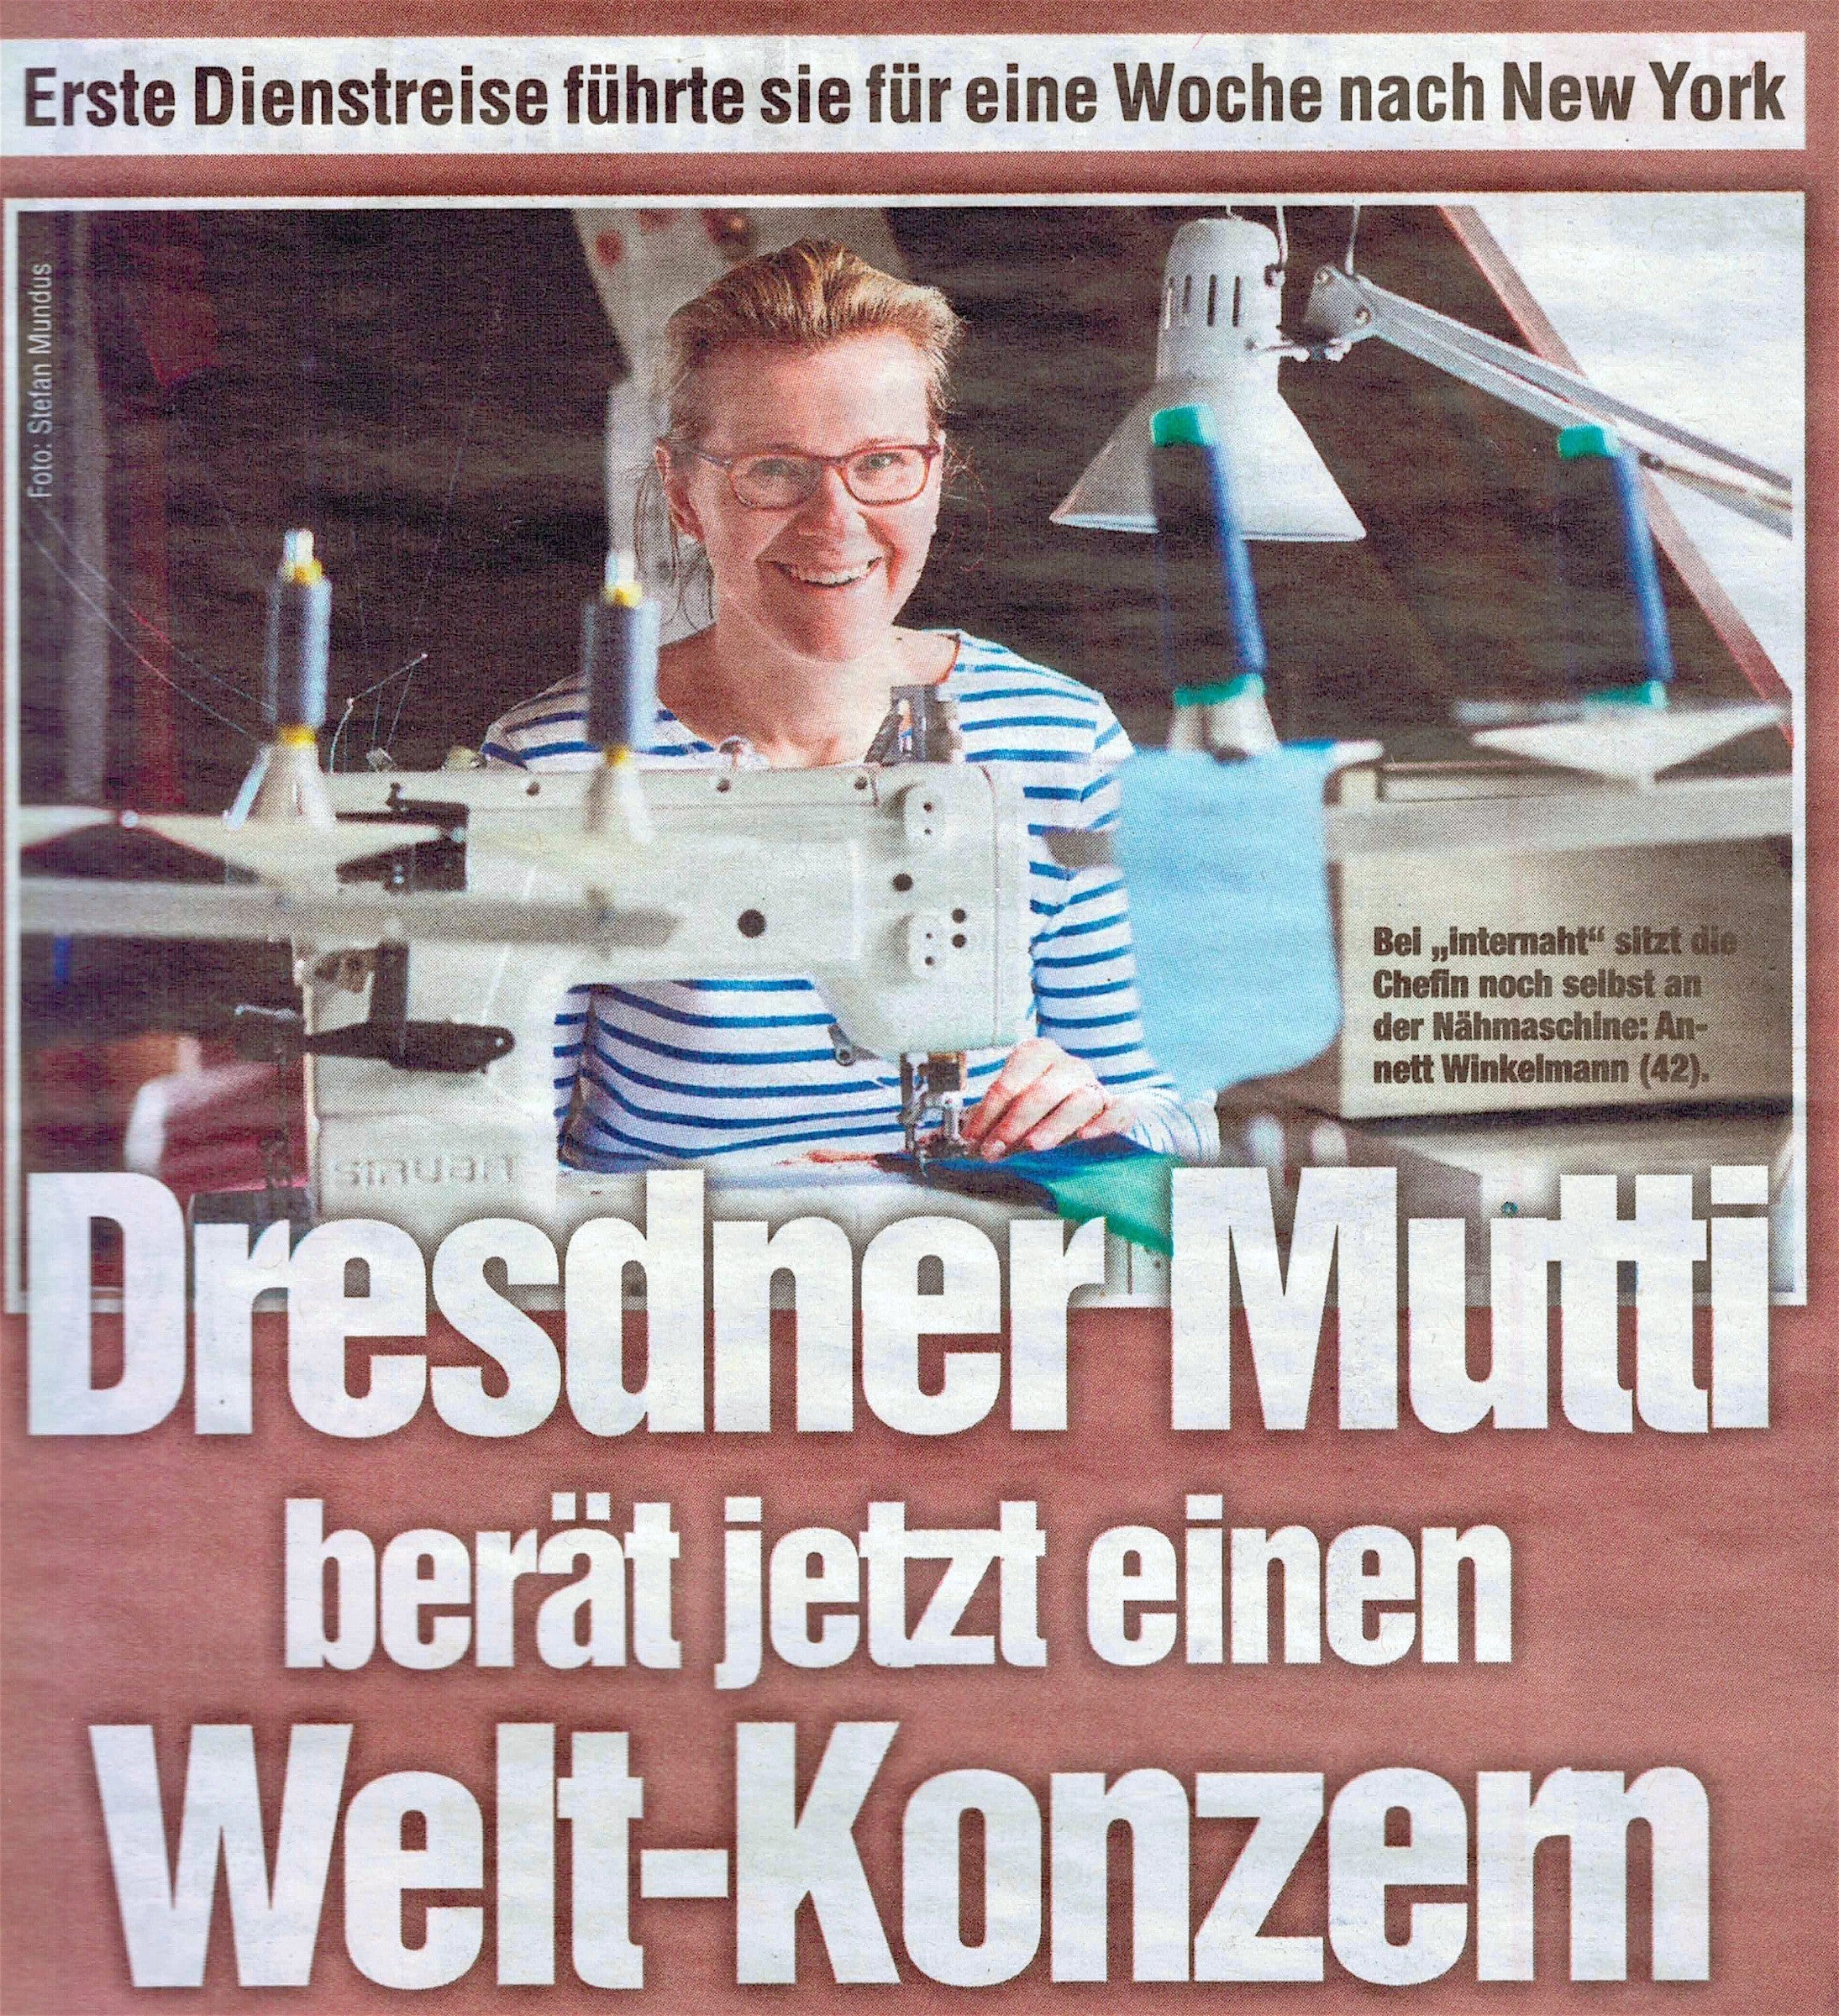 März 2016 - "Dresdner Mutti berät Welt-Konzern" - die Dresdner Morgenpost über unsere Arbeit im Etsy Seller Advisory Board.